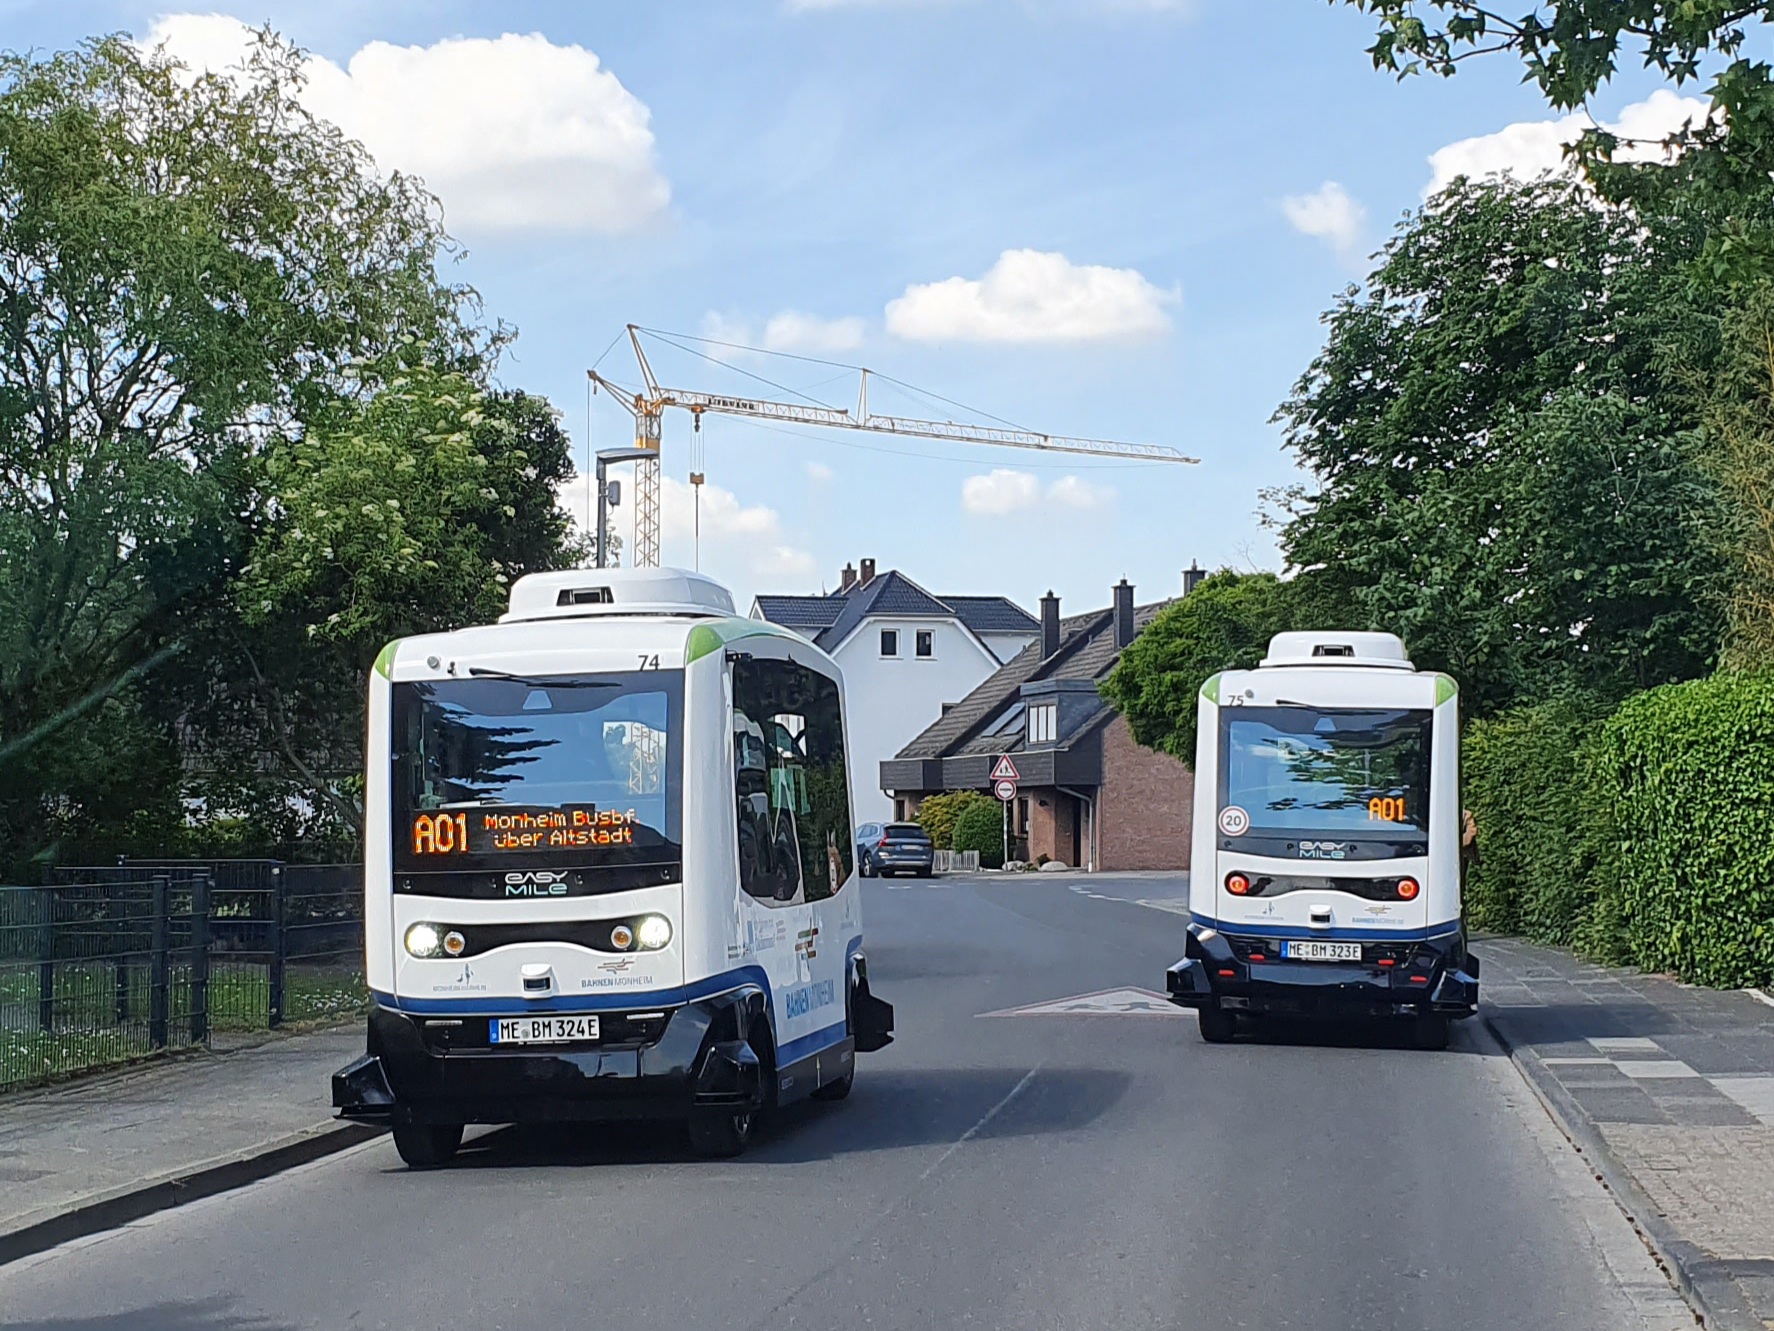 Leichte Sprache Bild: zwei autonome Busse auf einer Straße